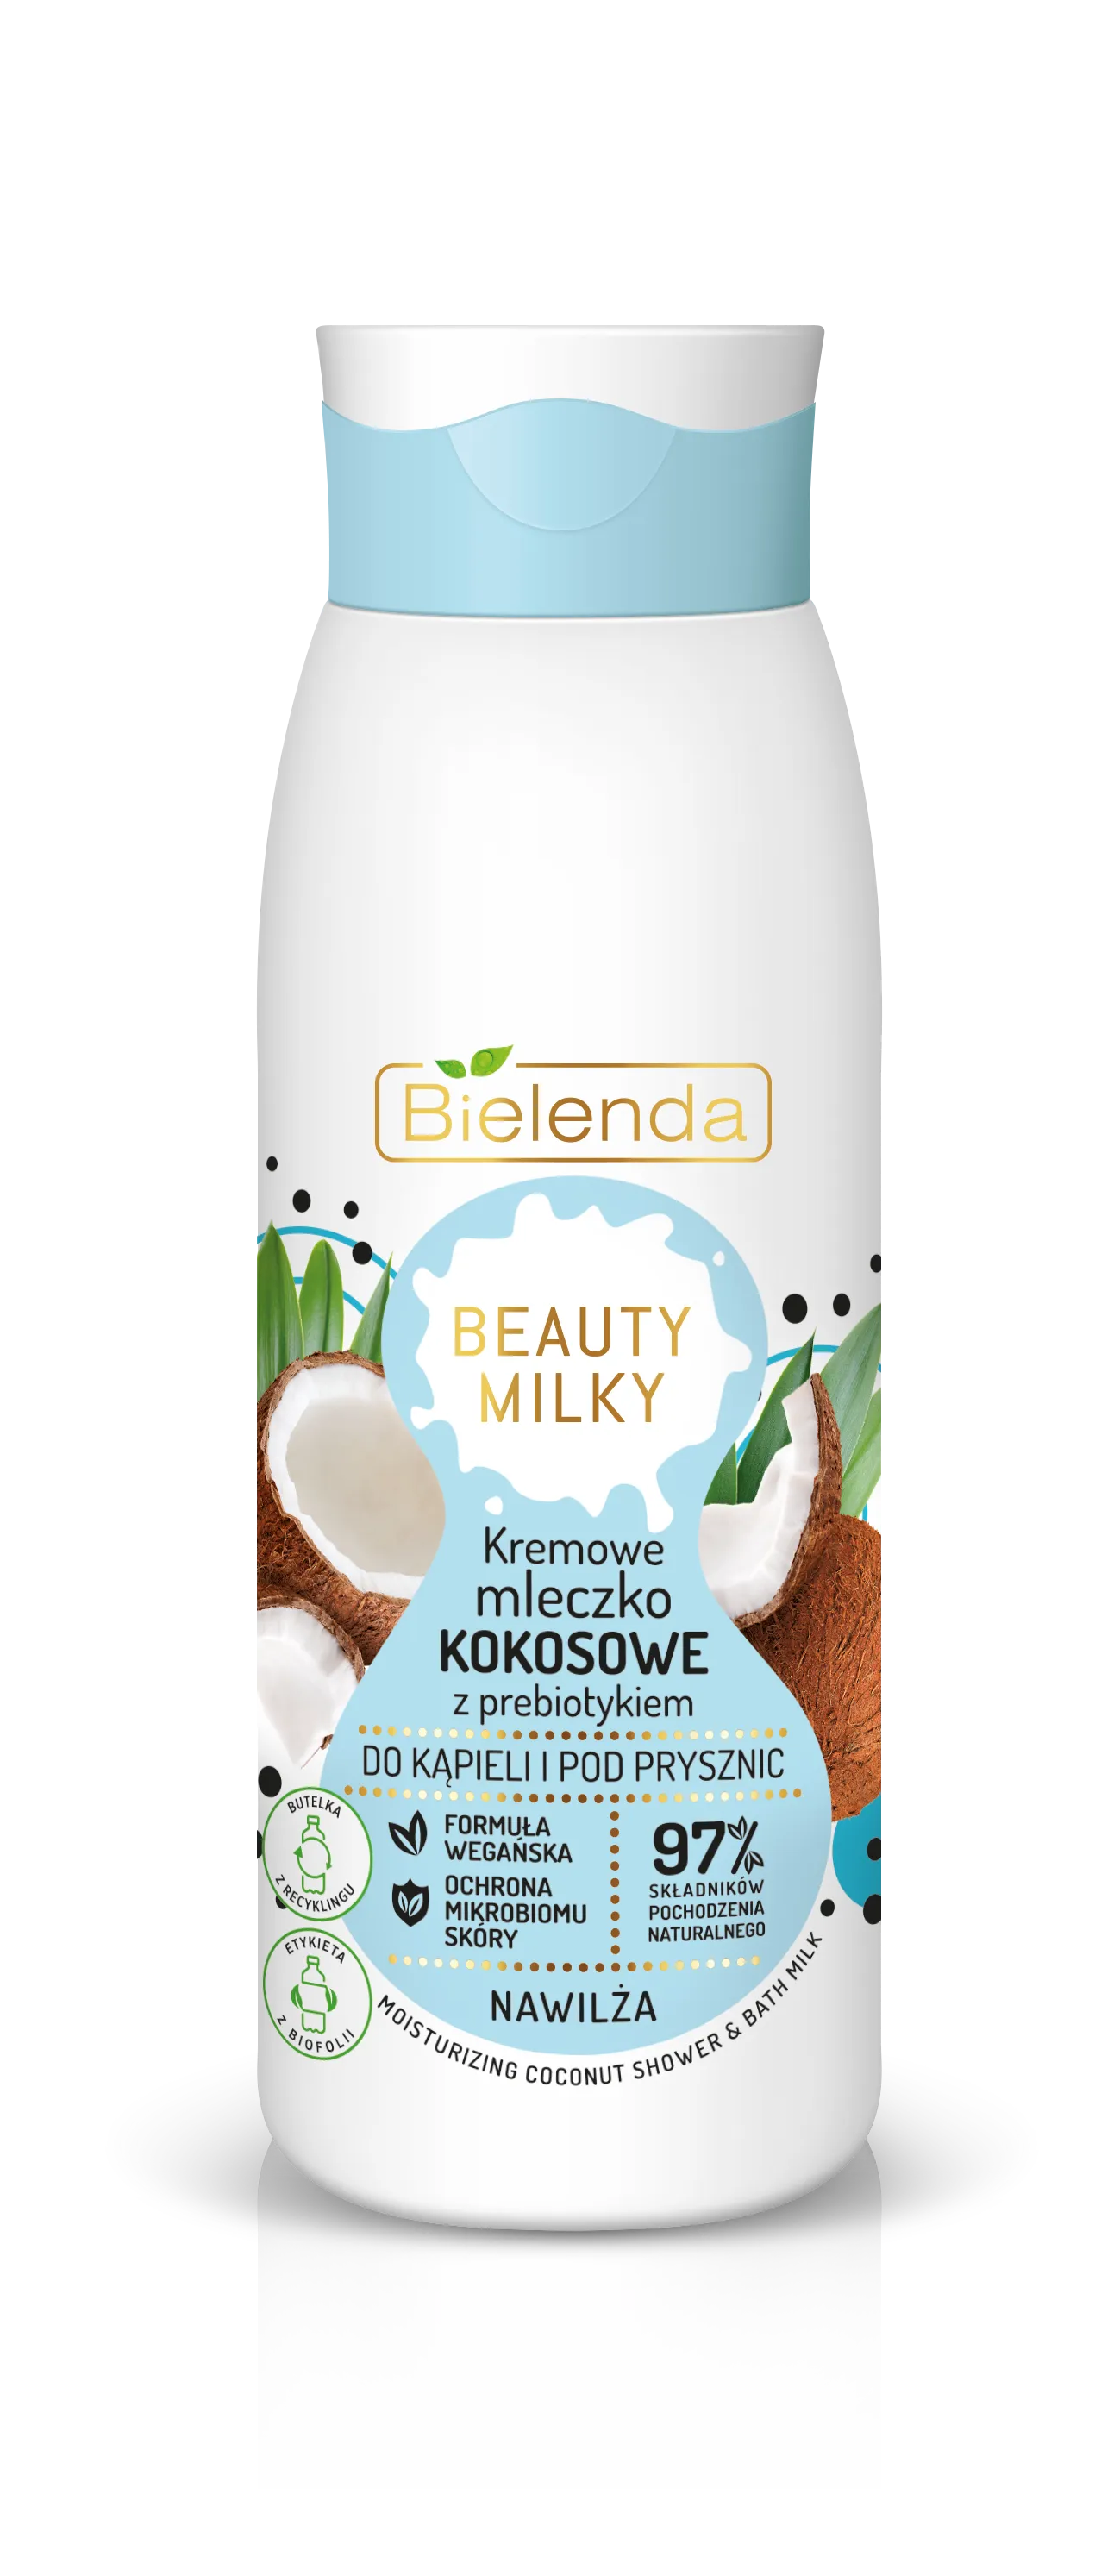 Bielenda Beauty Milky kremowe mleczko kokosowe do kąpieli i pod prysznic, 400 ml